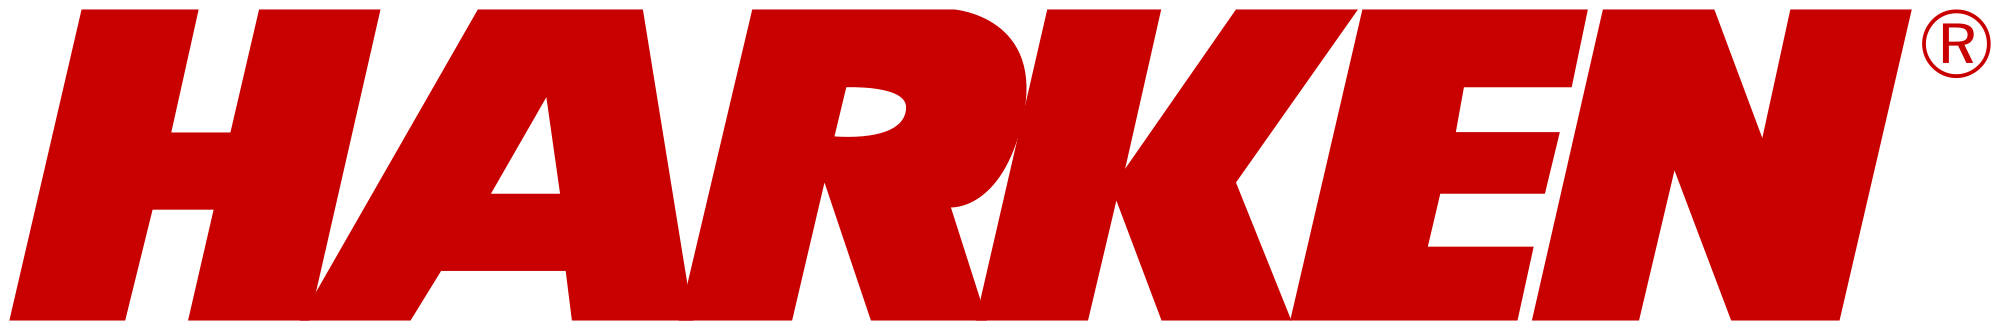 2000px Harken logo.svg